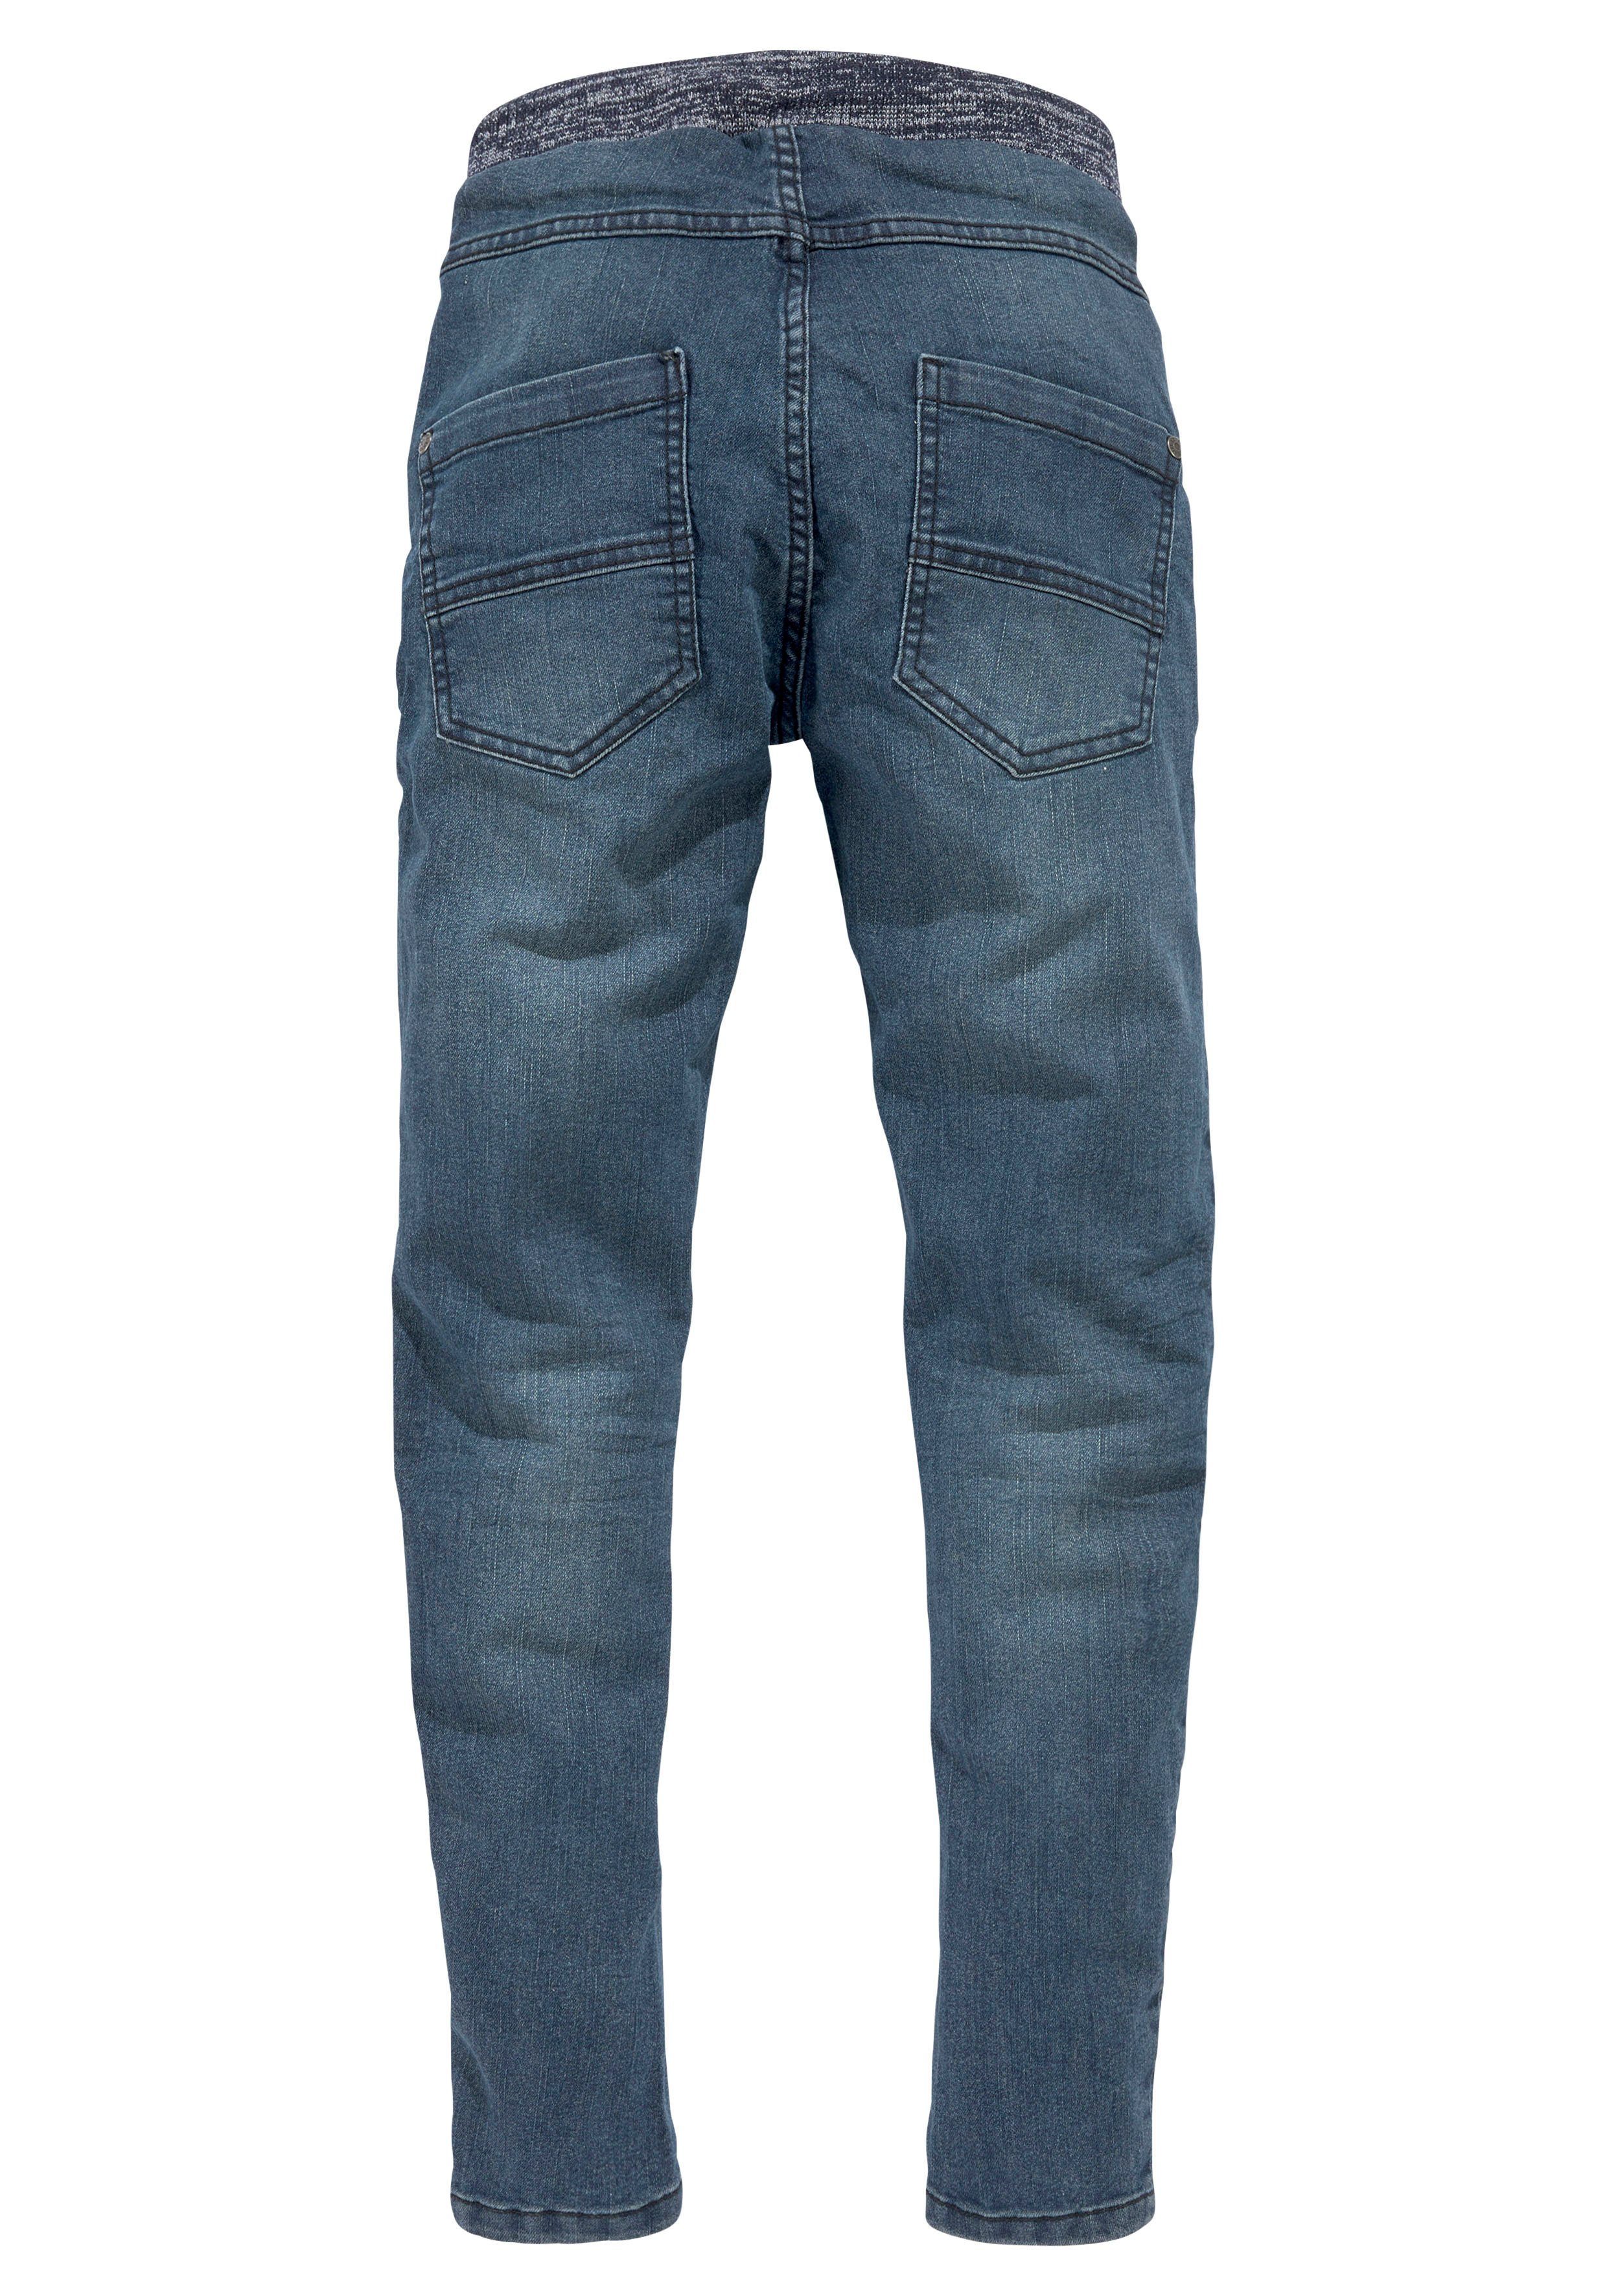 Stretch-Jeans schmalem mit mit Beinverlauf Arizona Rippenbund tollem